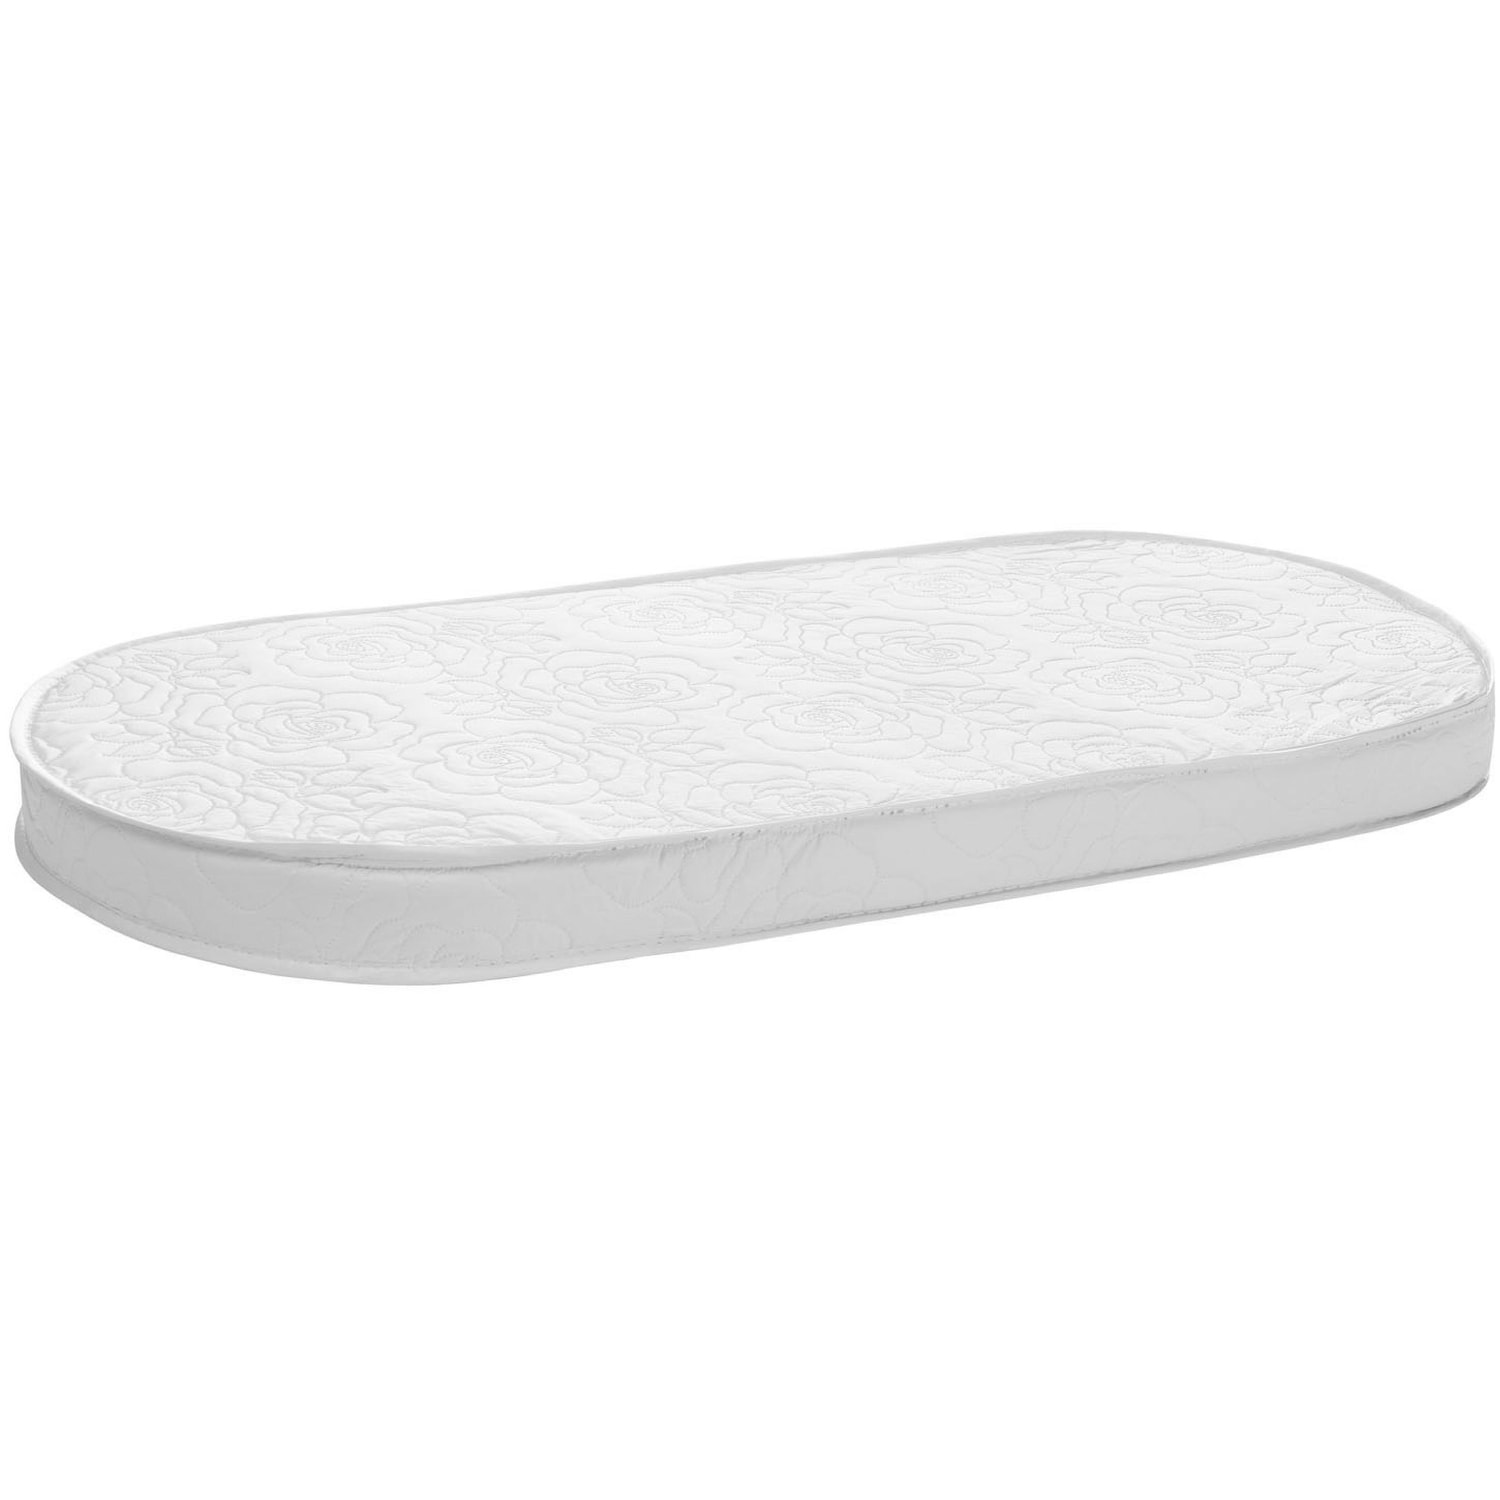 soft bassinet mattress